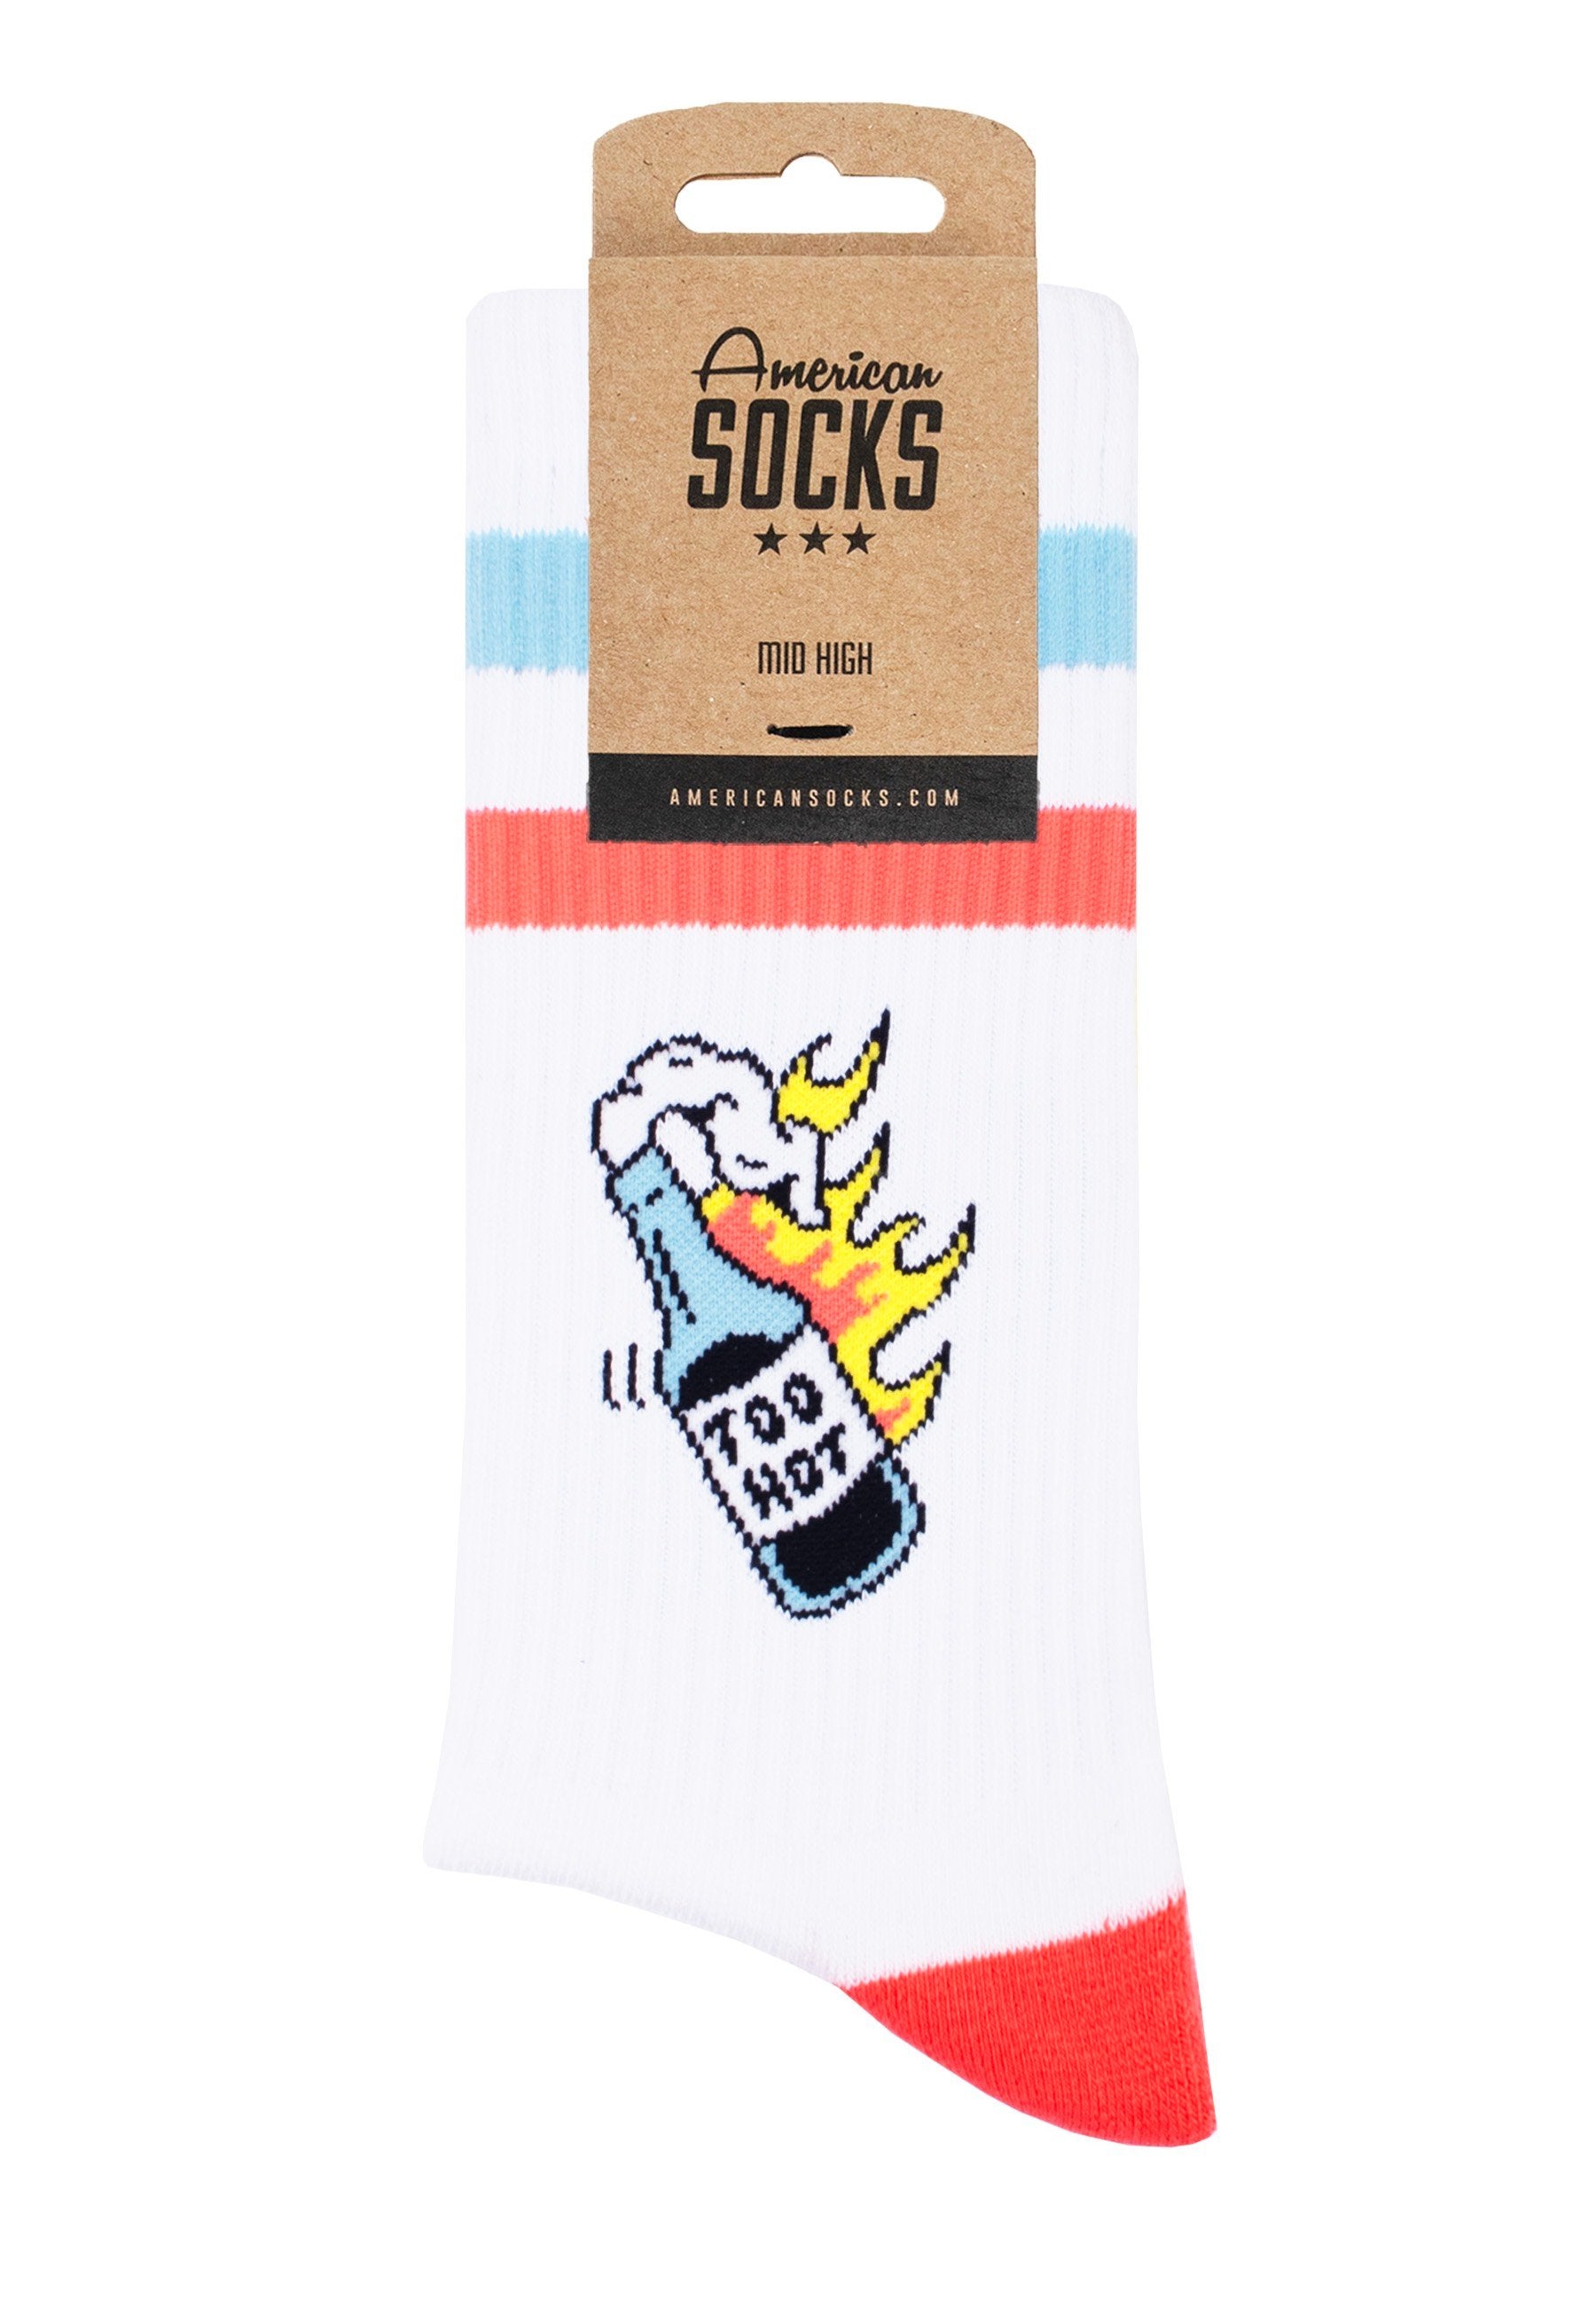 American Socks - 2 Hot 4 You Mid High White - Socks